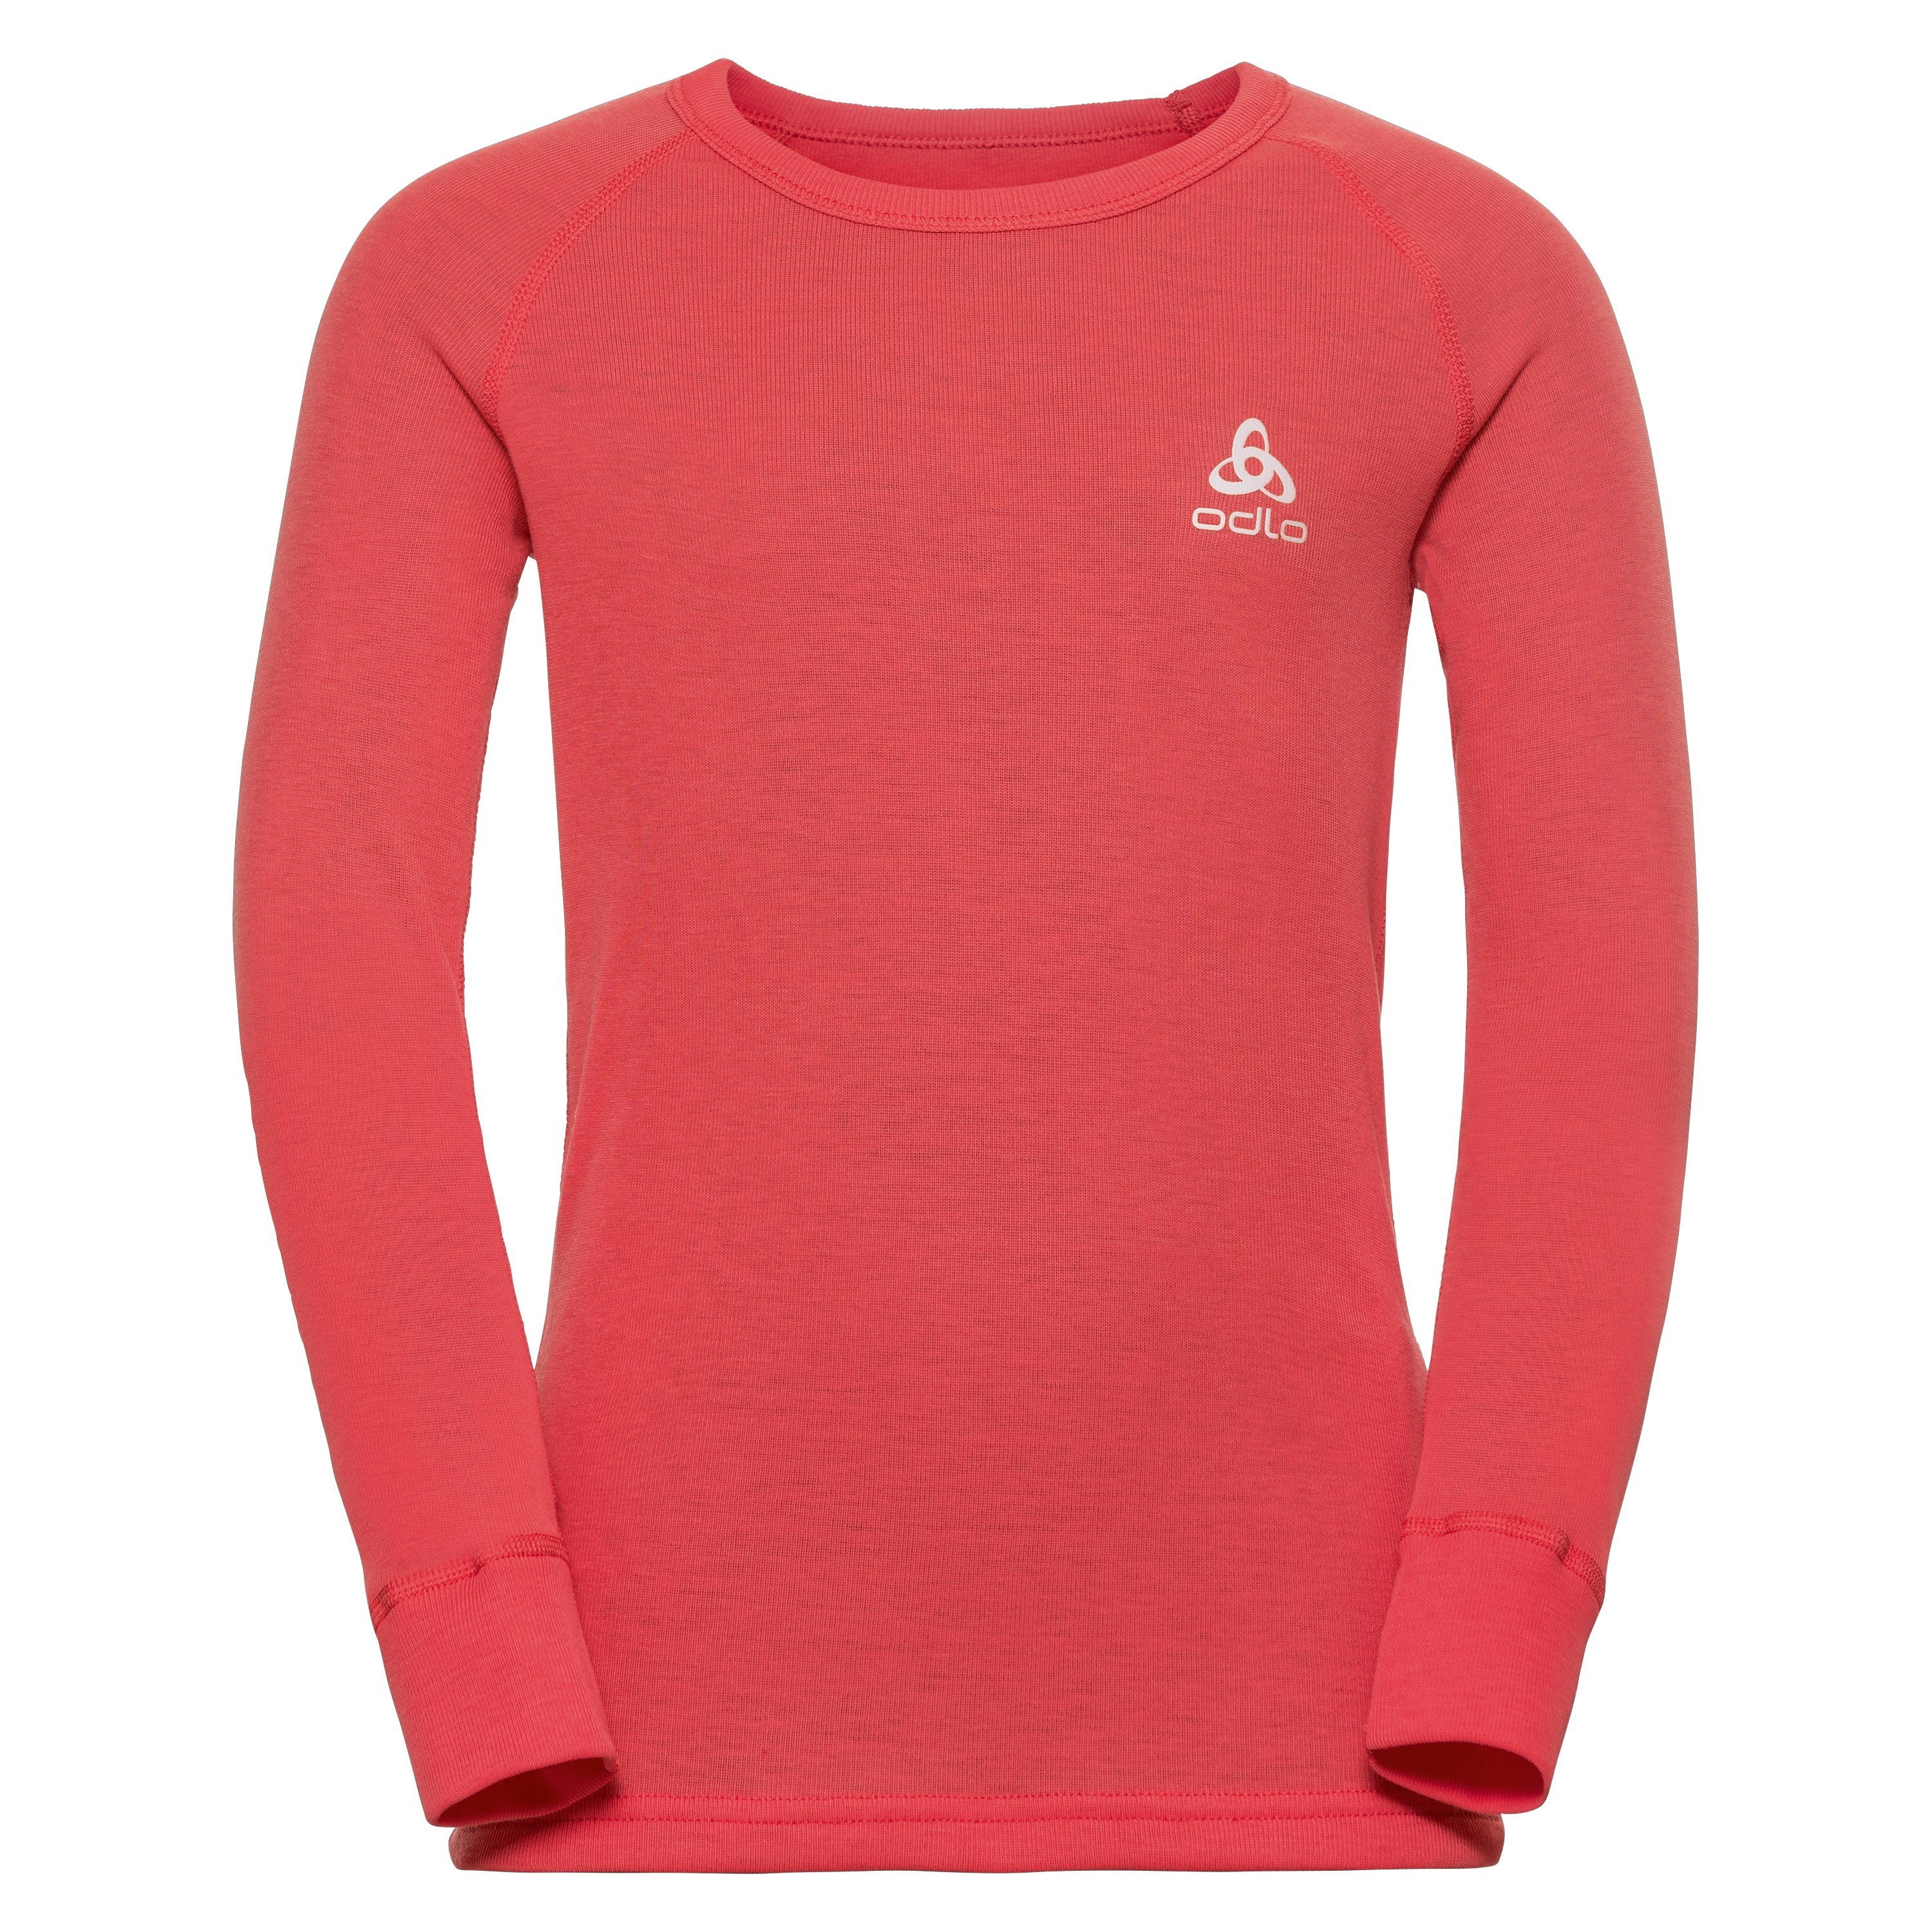 ODLO Active Warm Funktionsunterwäsche Langarm-Shirt für Kinder, 152, rot